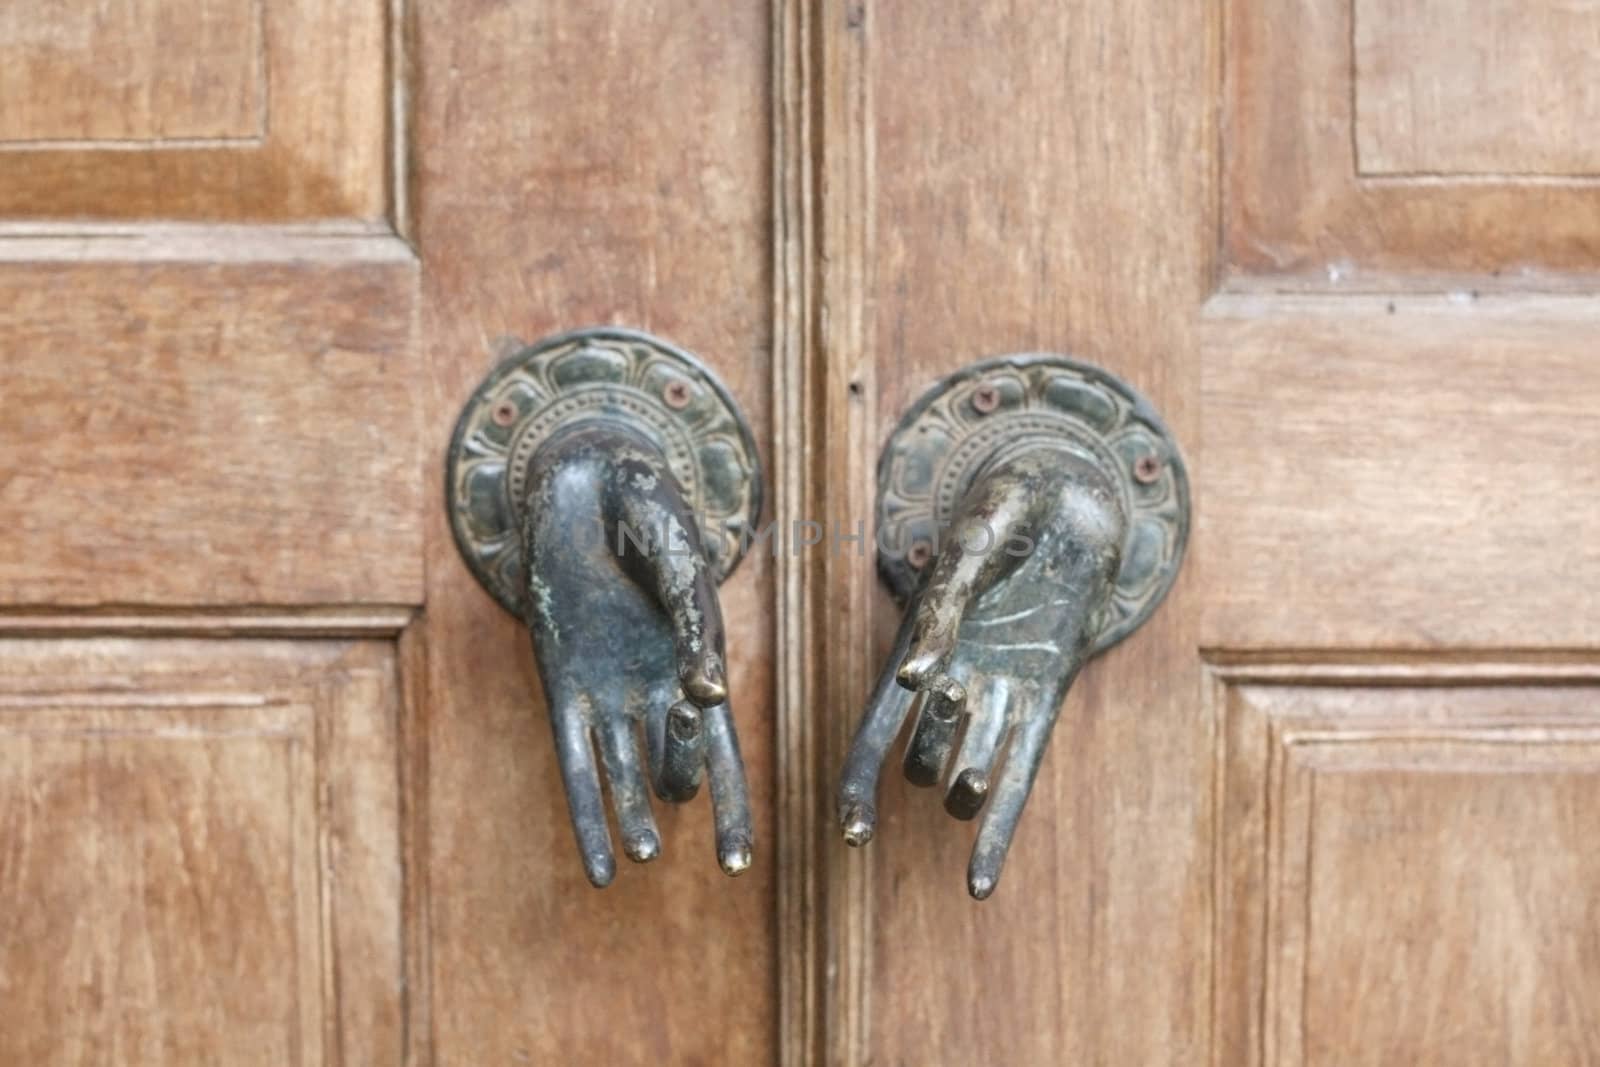 Balinese door handles by leeser